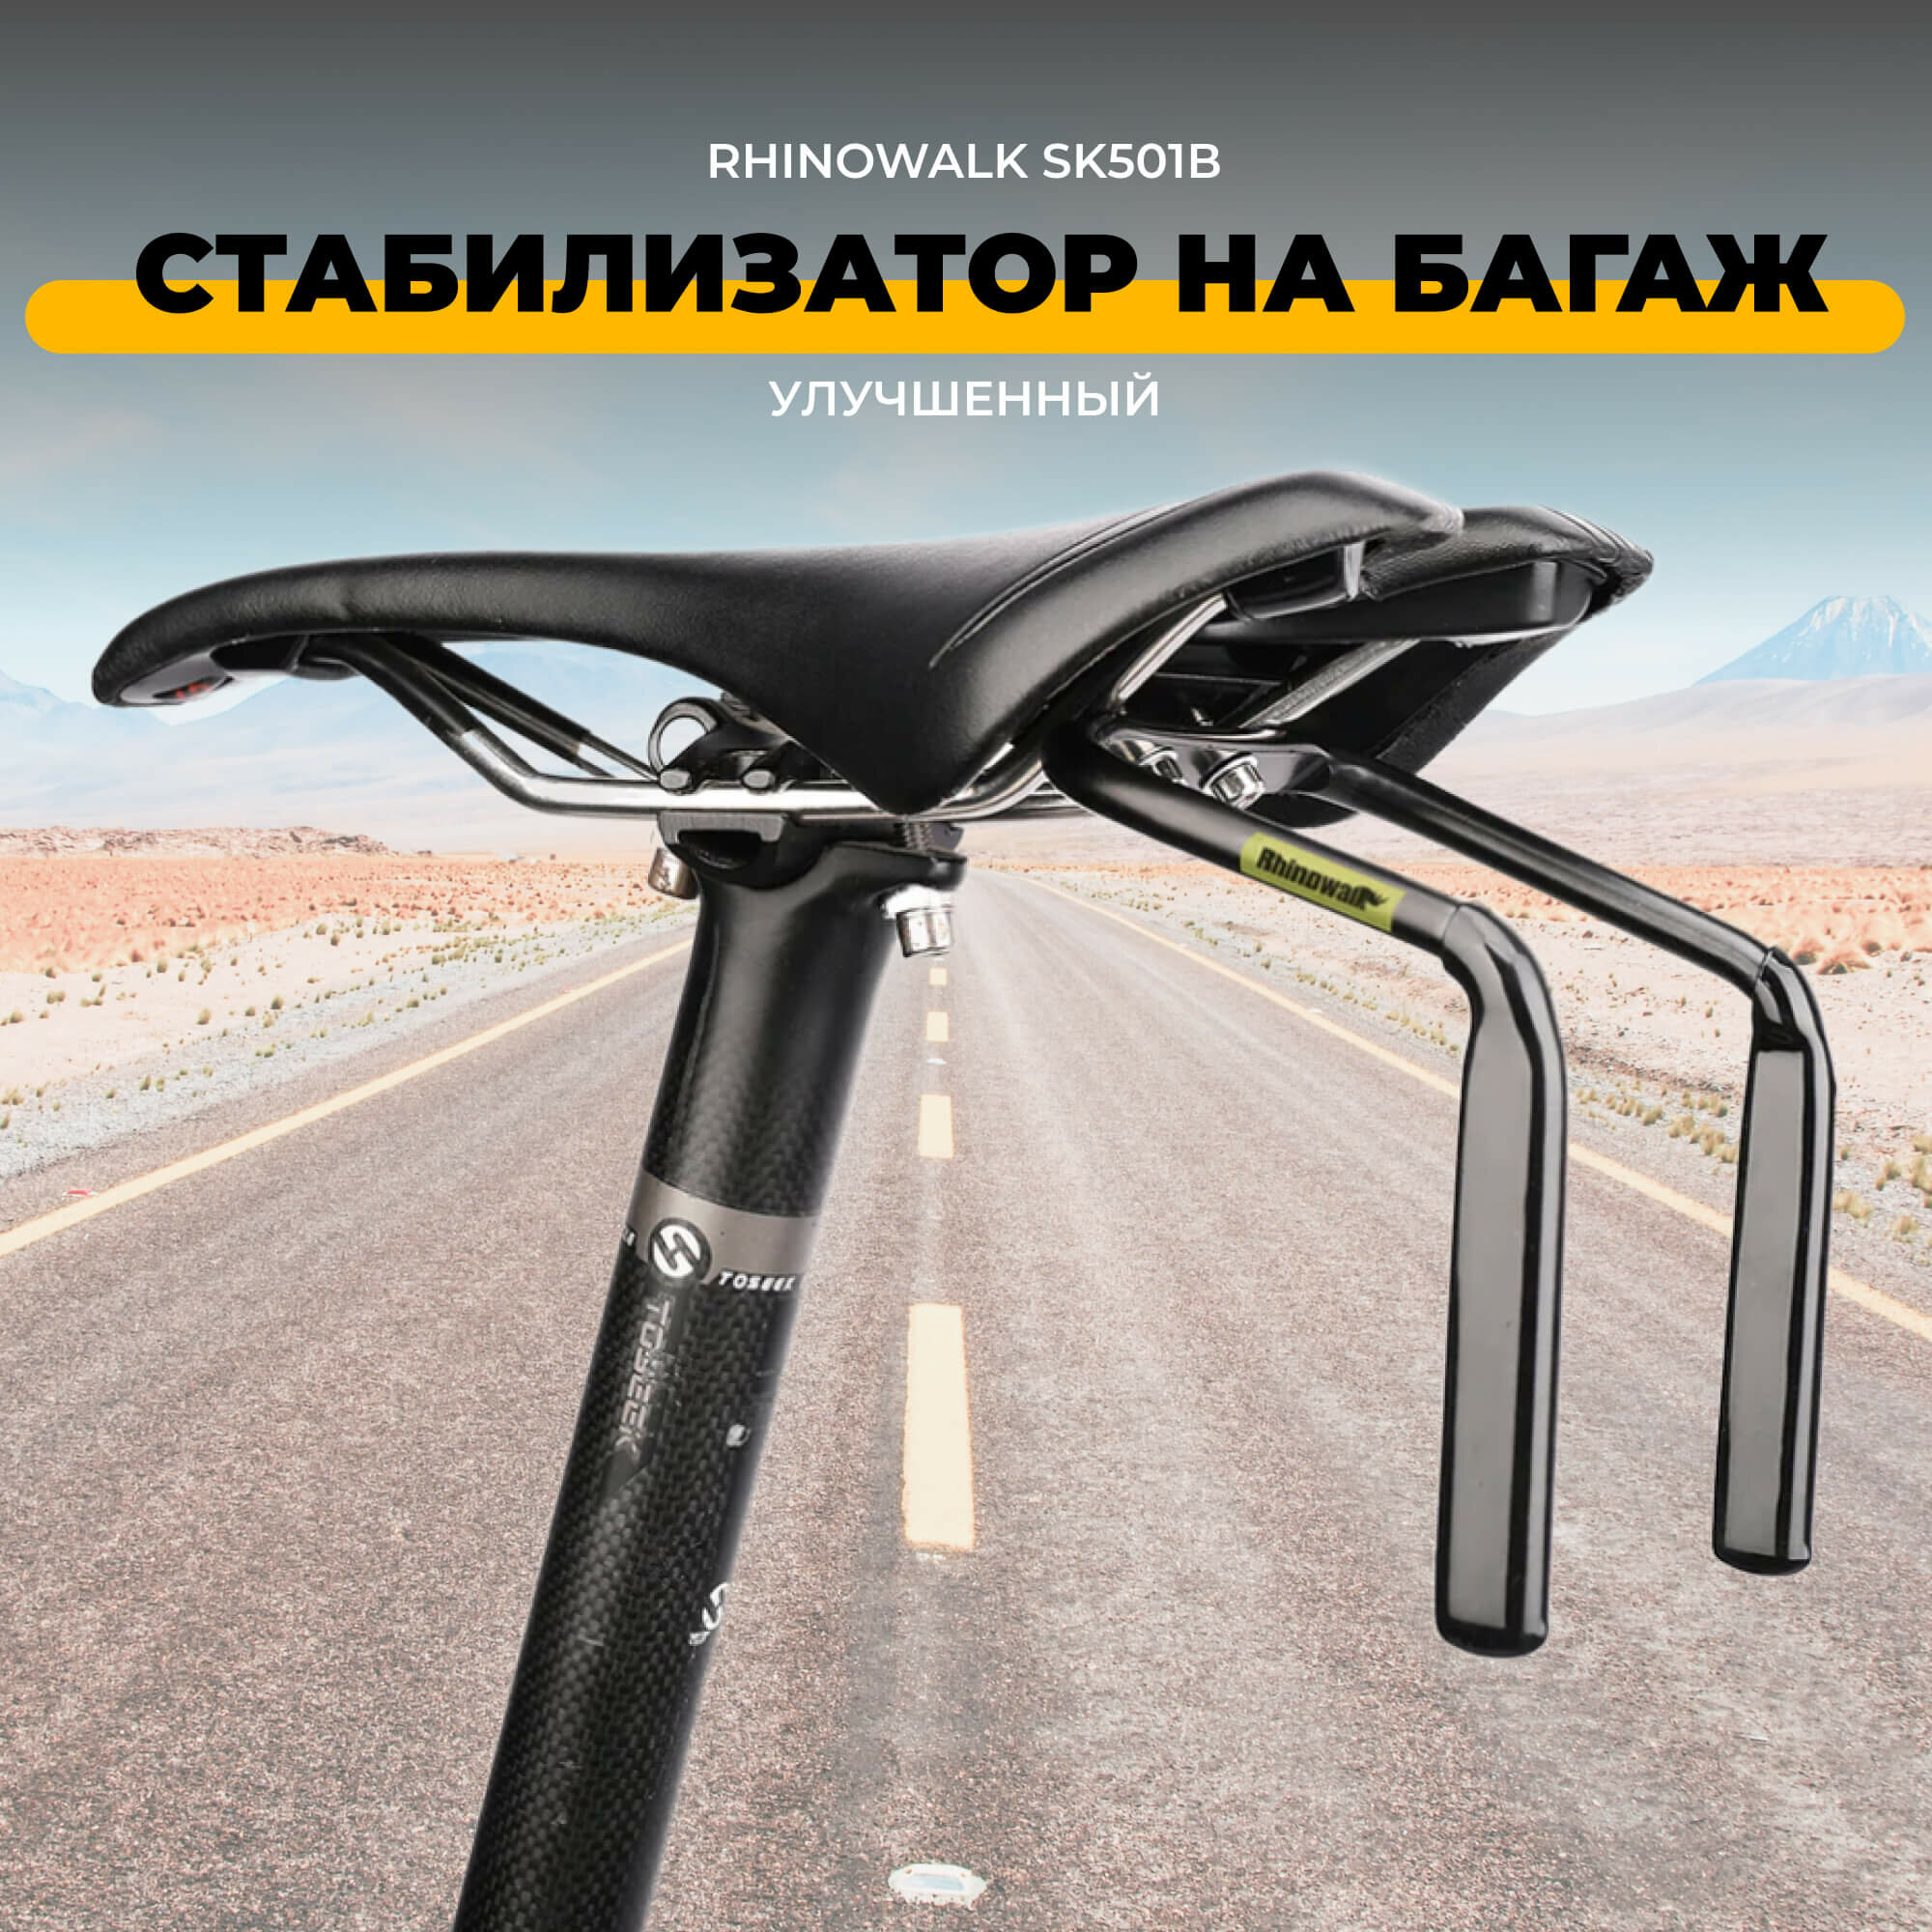 Стабилизатор для подседельного баула, кронштейн под велосипедное седло, флягодержатель Rhinowalk SK501